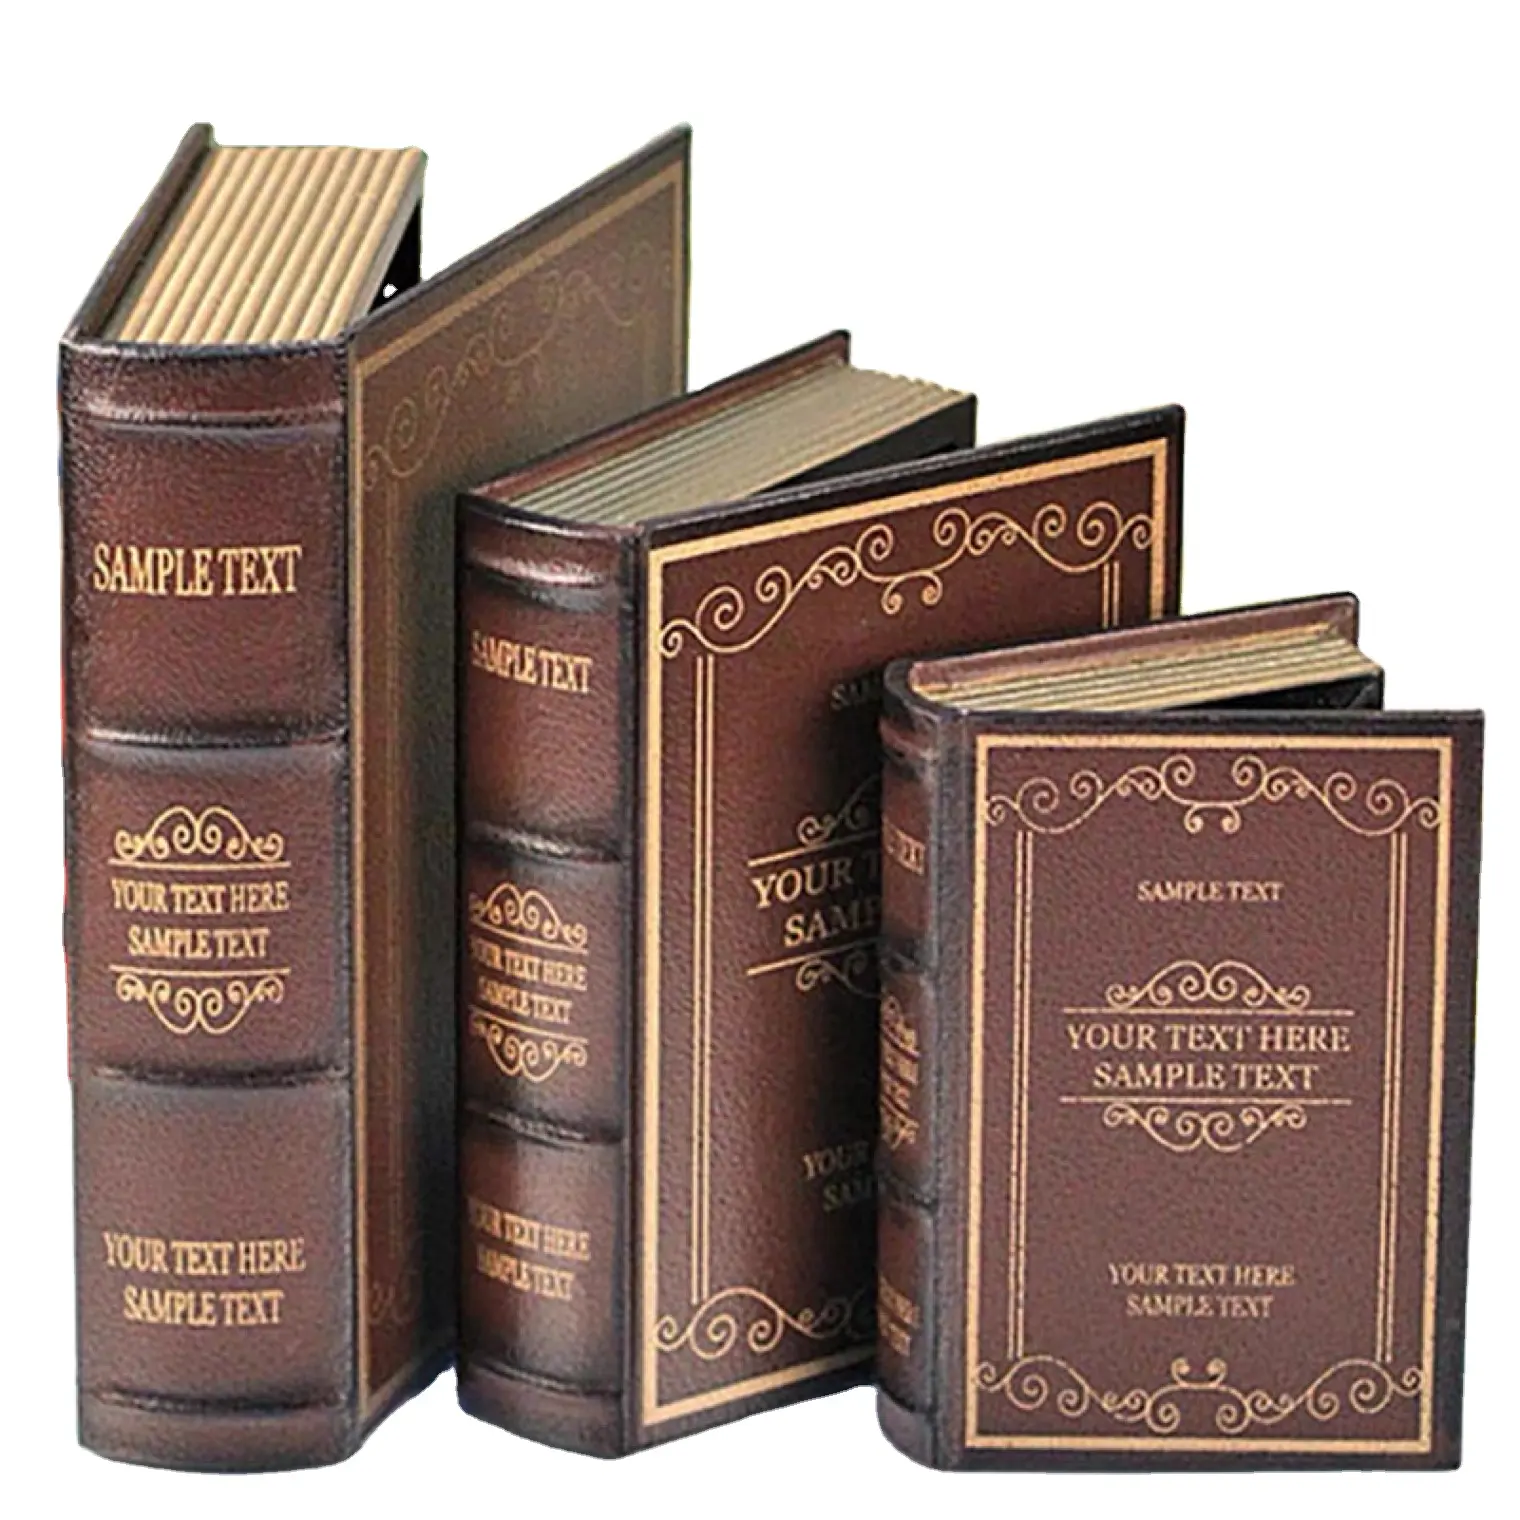 На заказ черная упаковка Cajas Libros магнитное хранилище роскошная кожаная деревянная подарочная коробка в форме ложной книги